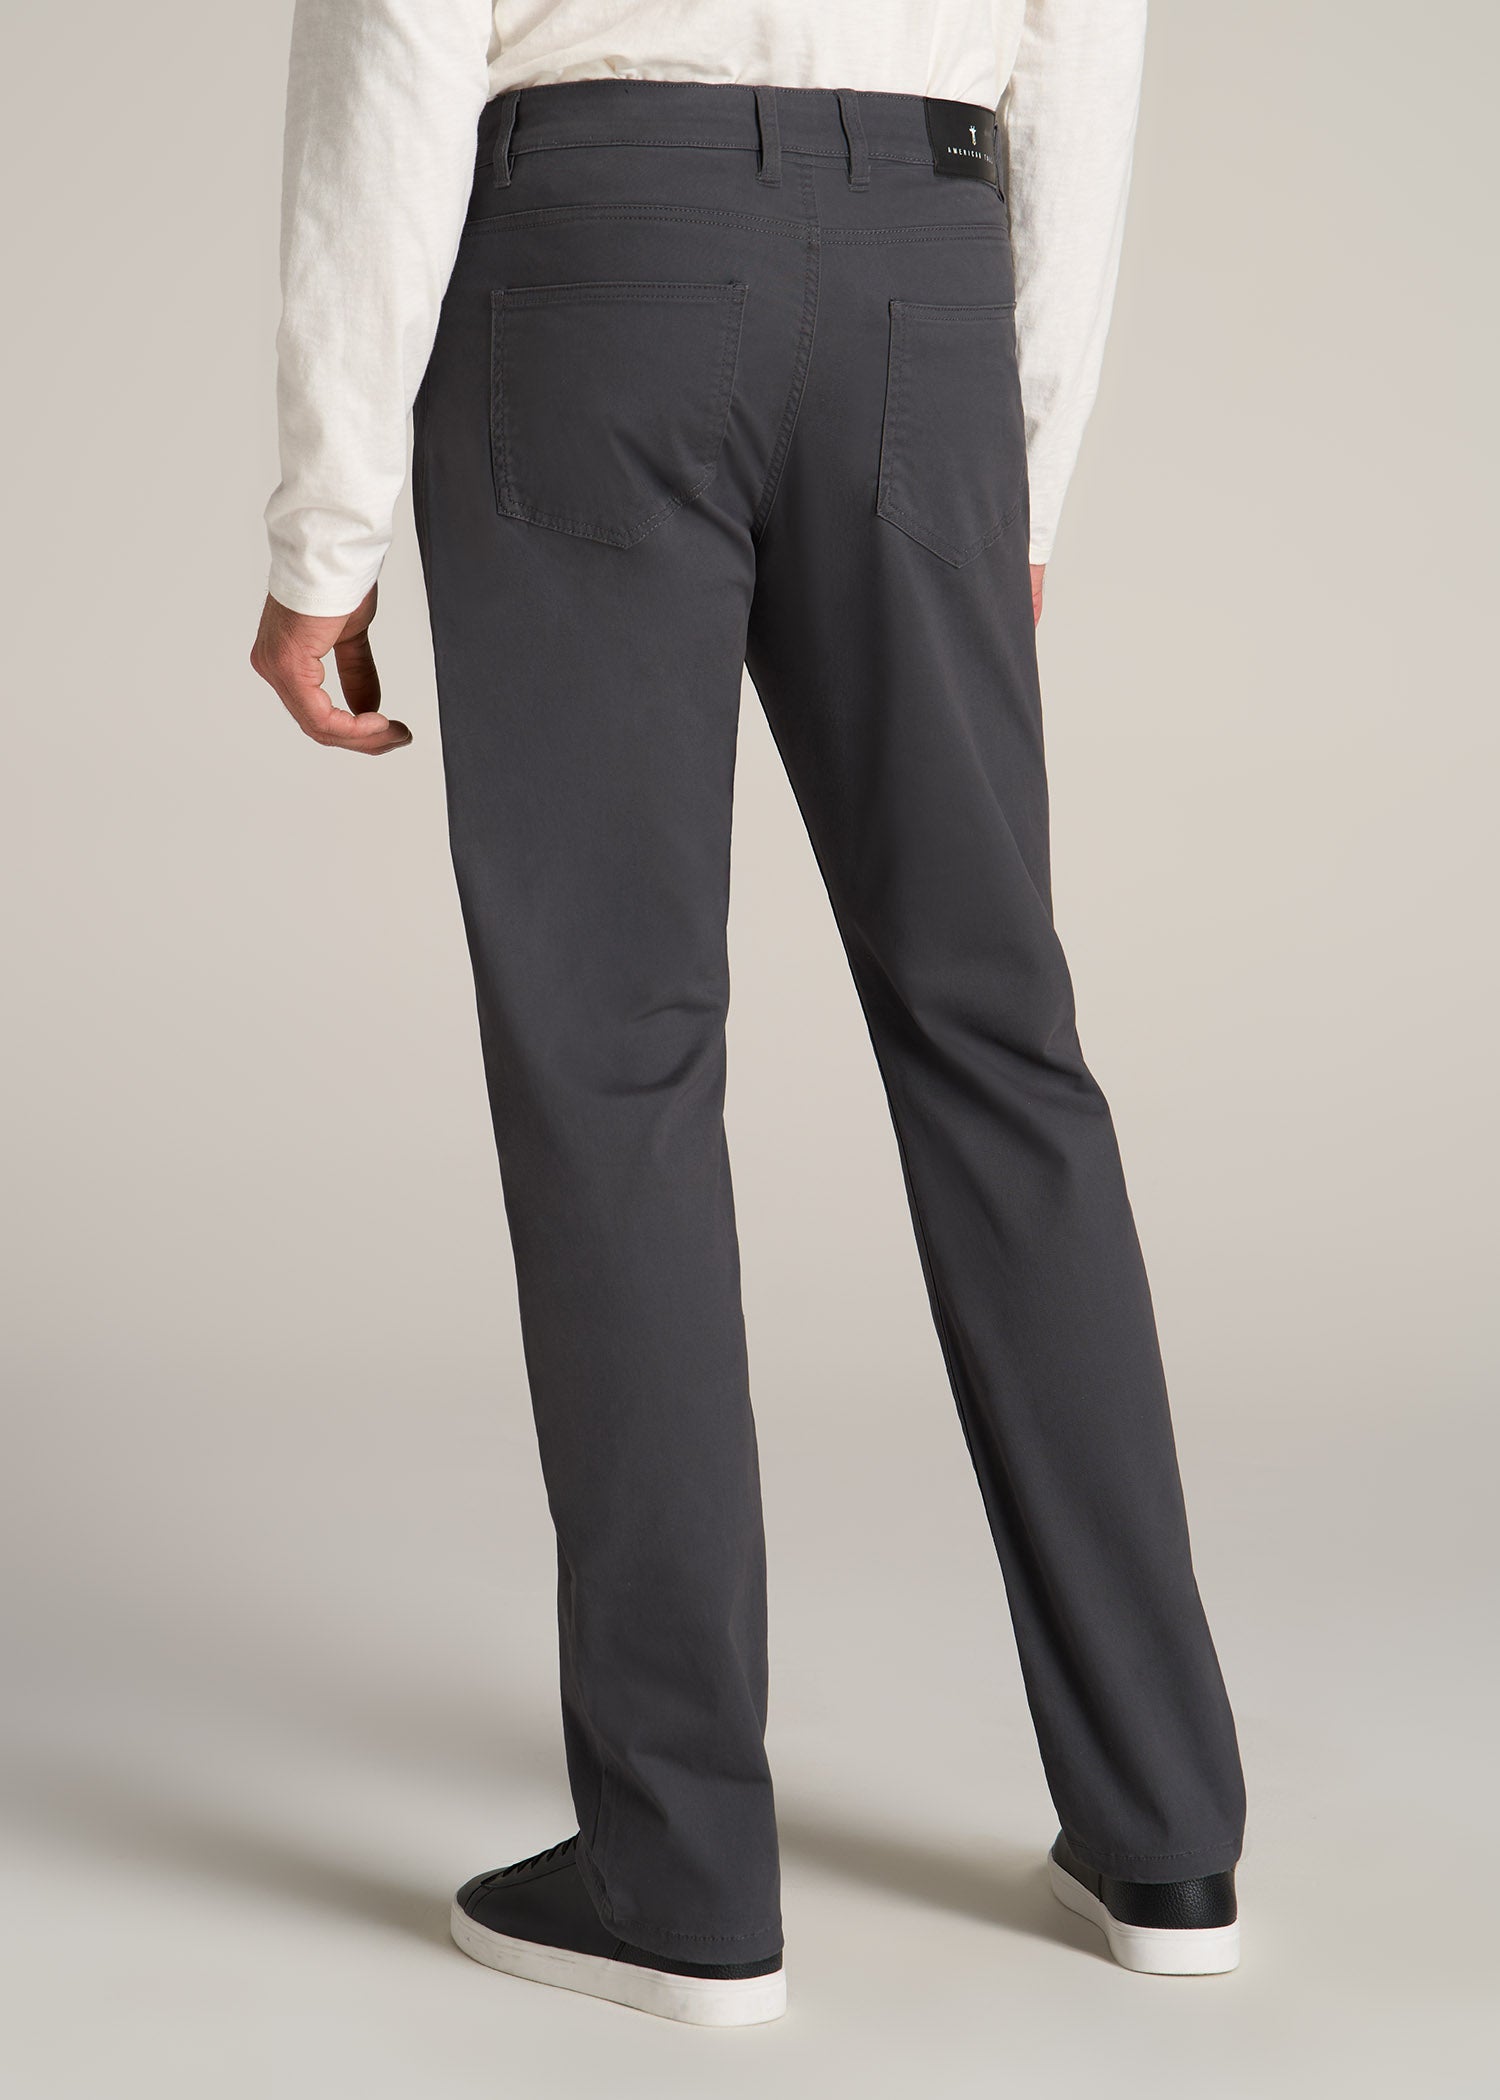 Old Navy Pants Women's Size 14 Tall Boot Cut Khaki Grey Pockets